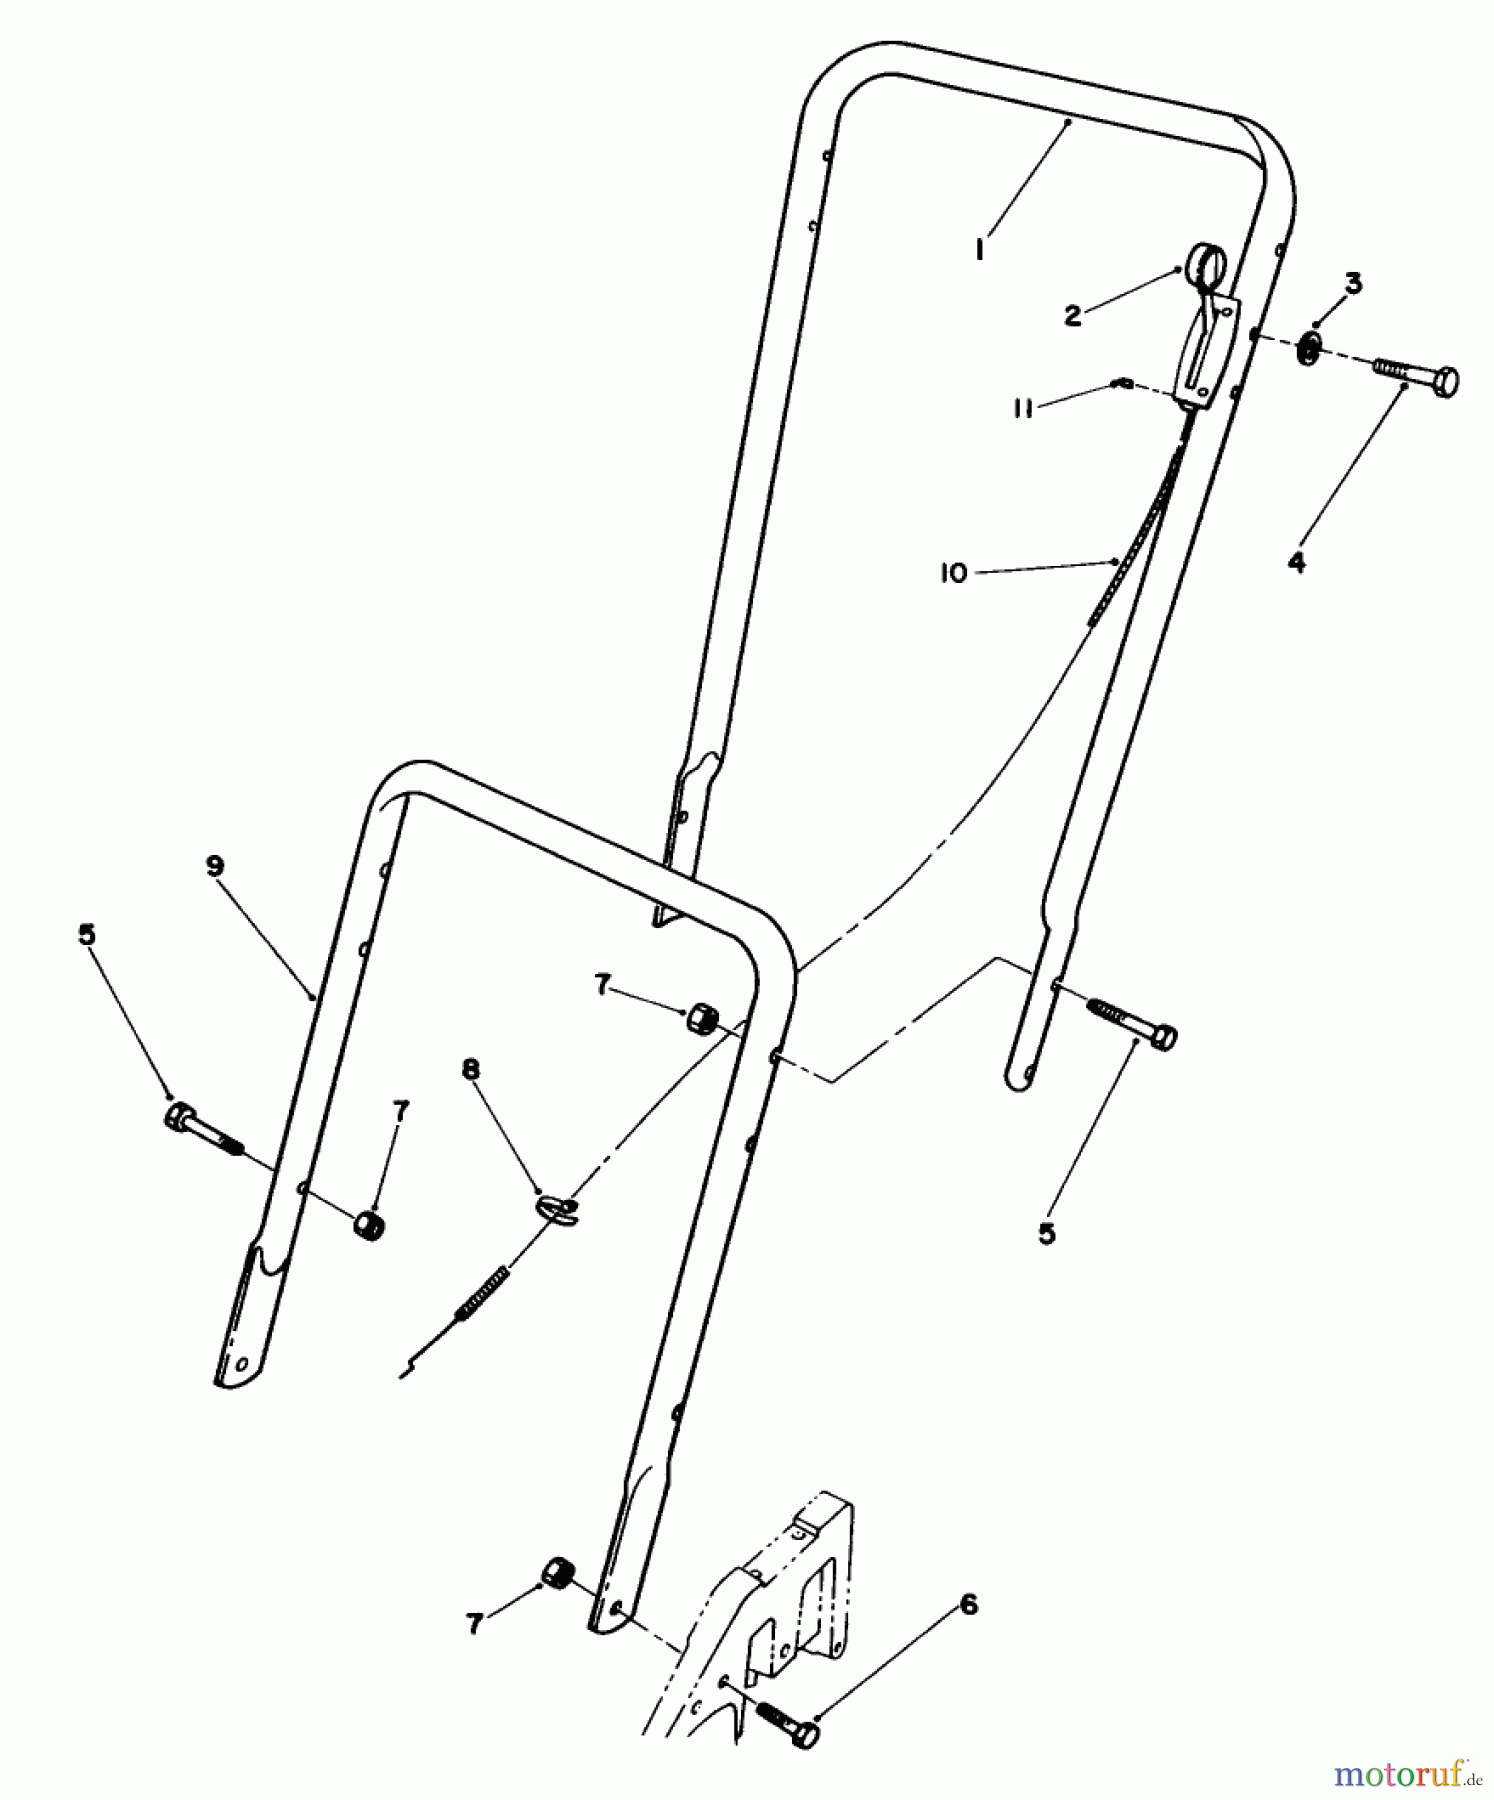  Toro Neu Mowers, Walk-Behind Seite 2 22025 - Toro Lawnmower, 1990 (0000001-0999999) HANDLE ASSEMBLY